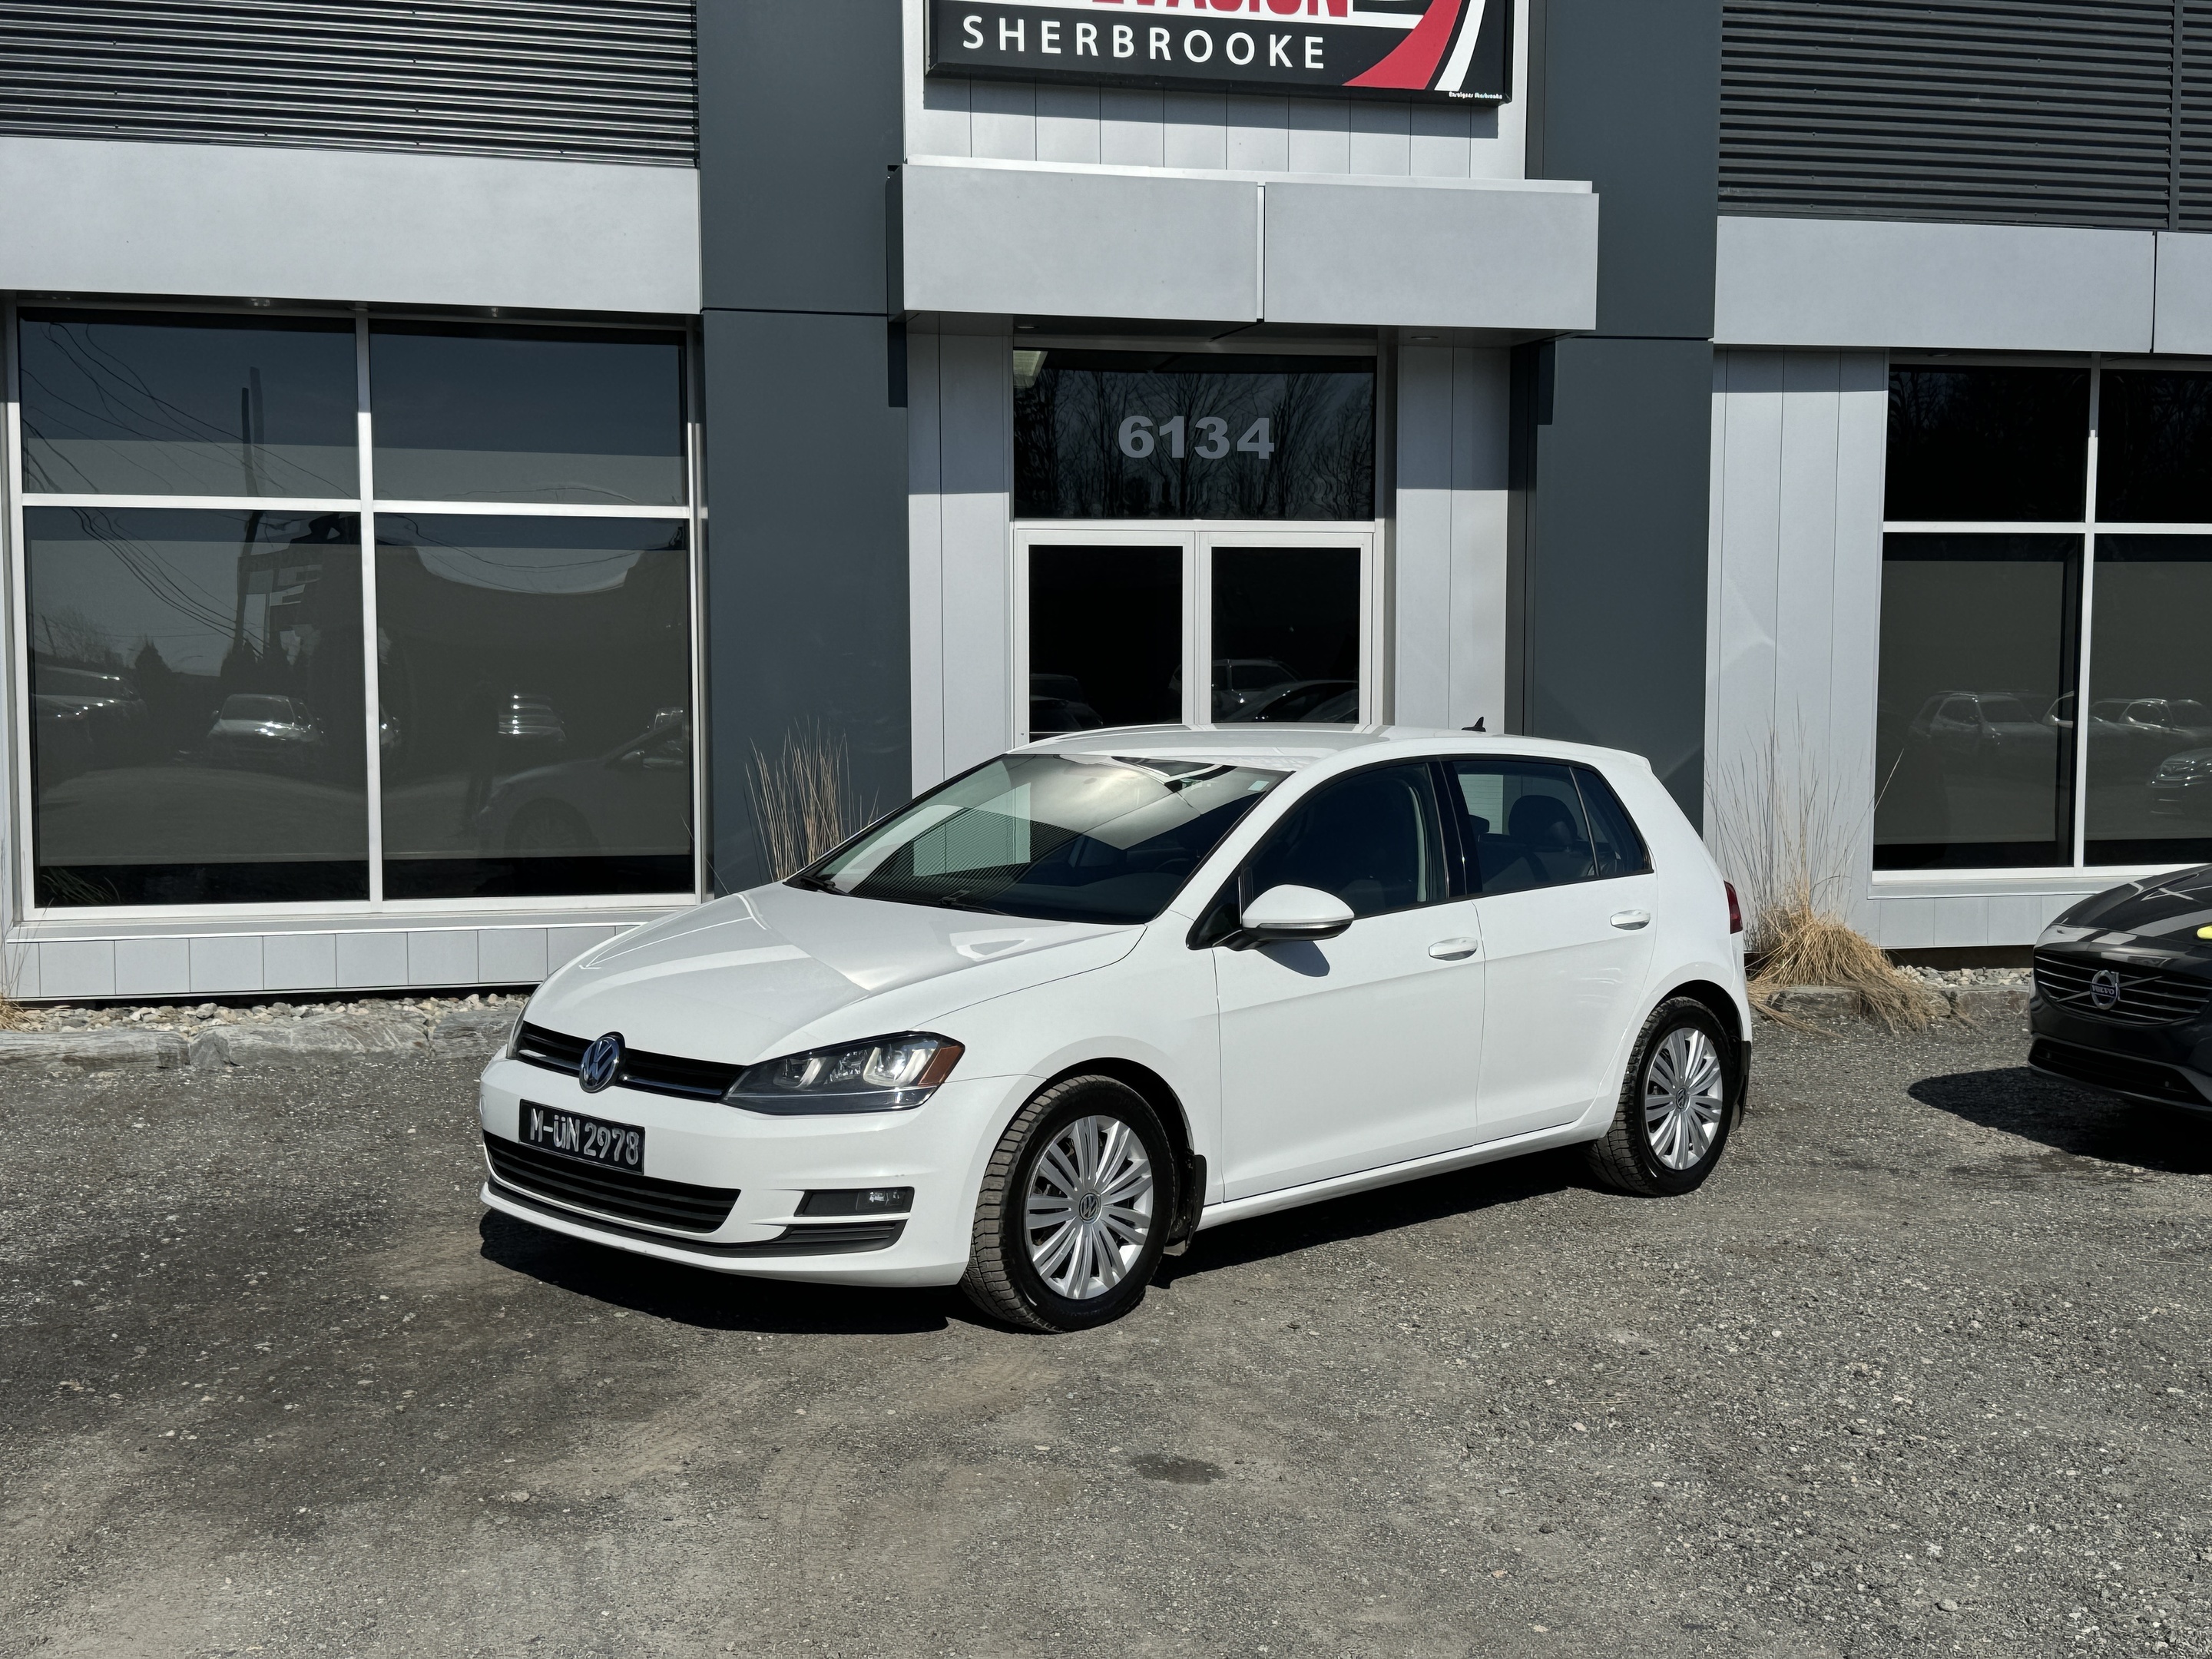 2015 Volkswagen Golf Vendu, sold merci 